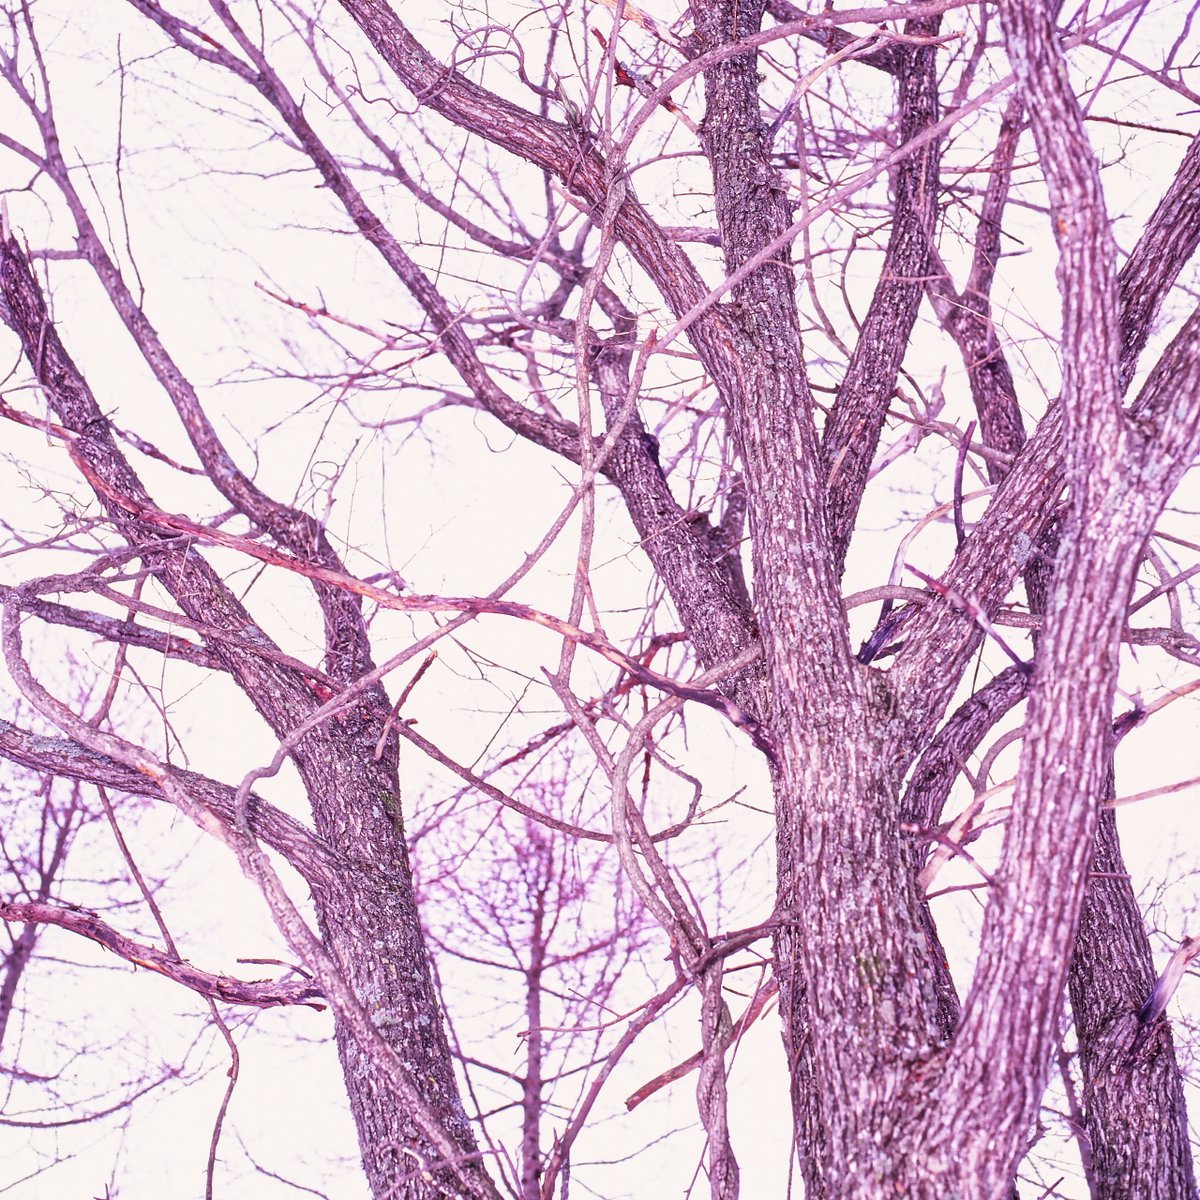 原 一夫 雲の名前は知らない على تويتر 木々の仕事 1 灰色の木 木 木々 樹木 冬 灰色 冬空 曇り空 灰色 の木 裸の木 丘の上の木 冬の木 北海道の木 常呂 北見 北海道 ハッセルブラッド ベルビア 木々の仕事 Namaraexpress Harakazuoの